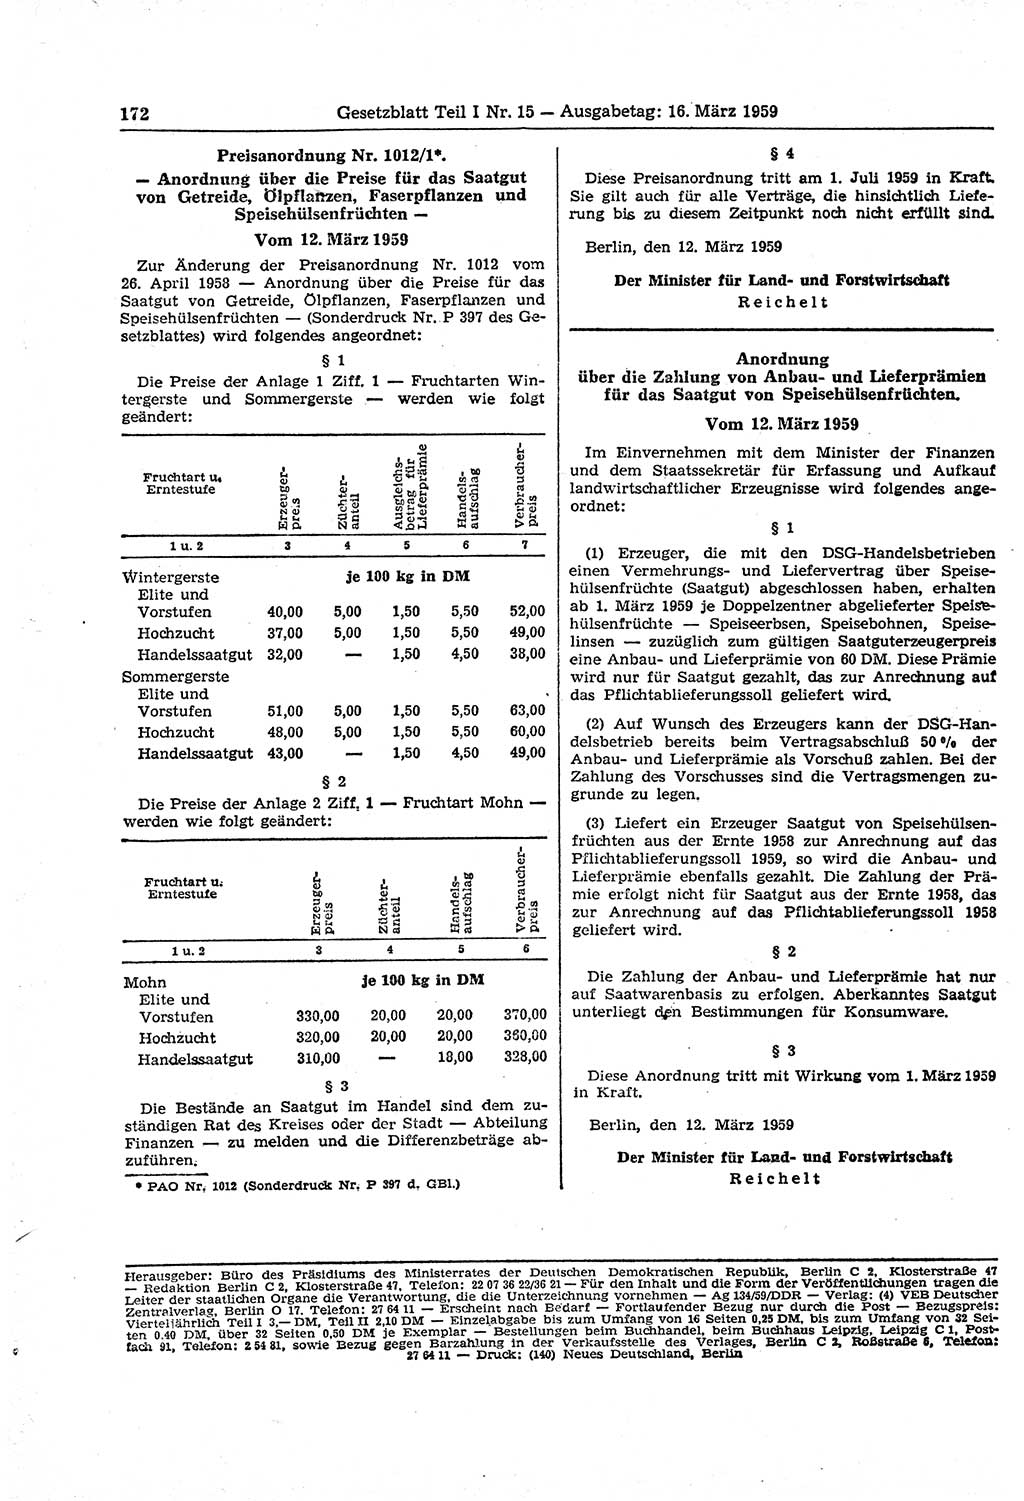 Gesetzblatt (GBl.) der Deutschen Demokratischen Republik (DDR) Teil Ⅰ 1959, Seite 172 (GBl. DDR Ⅰ 1959, S. 172)